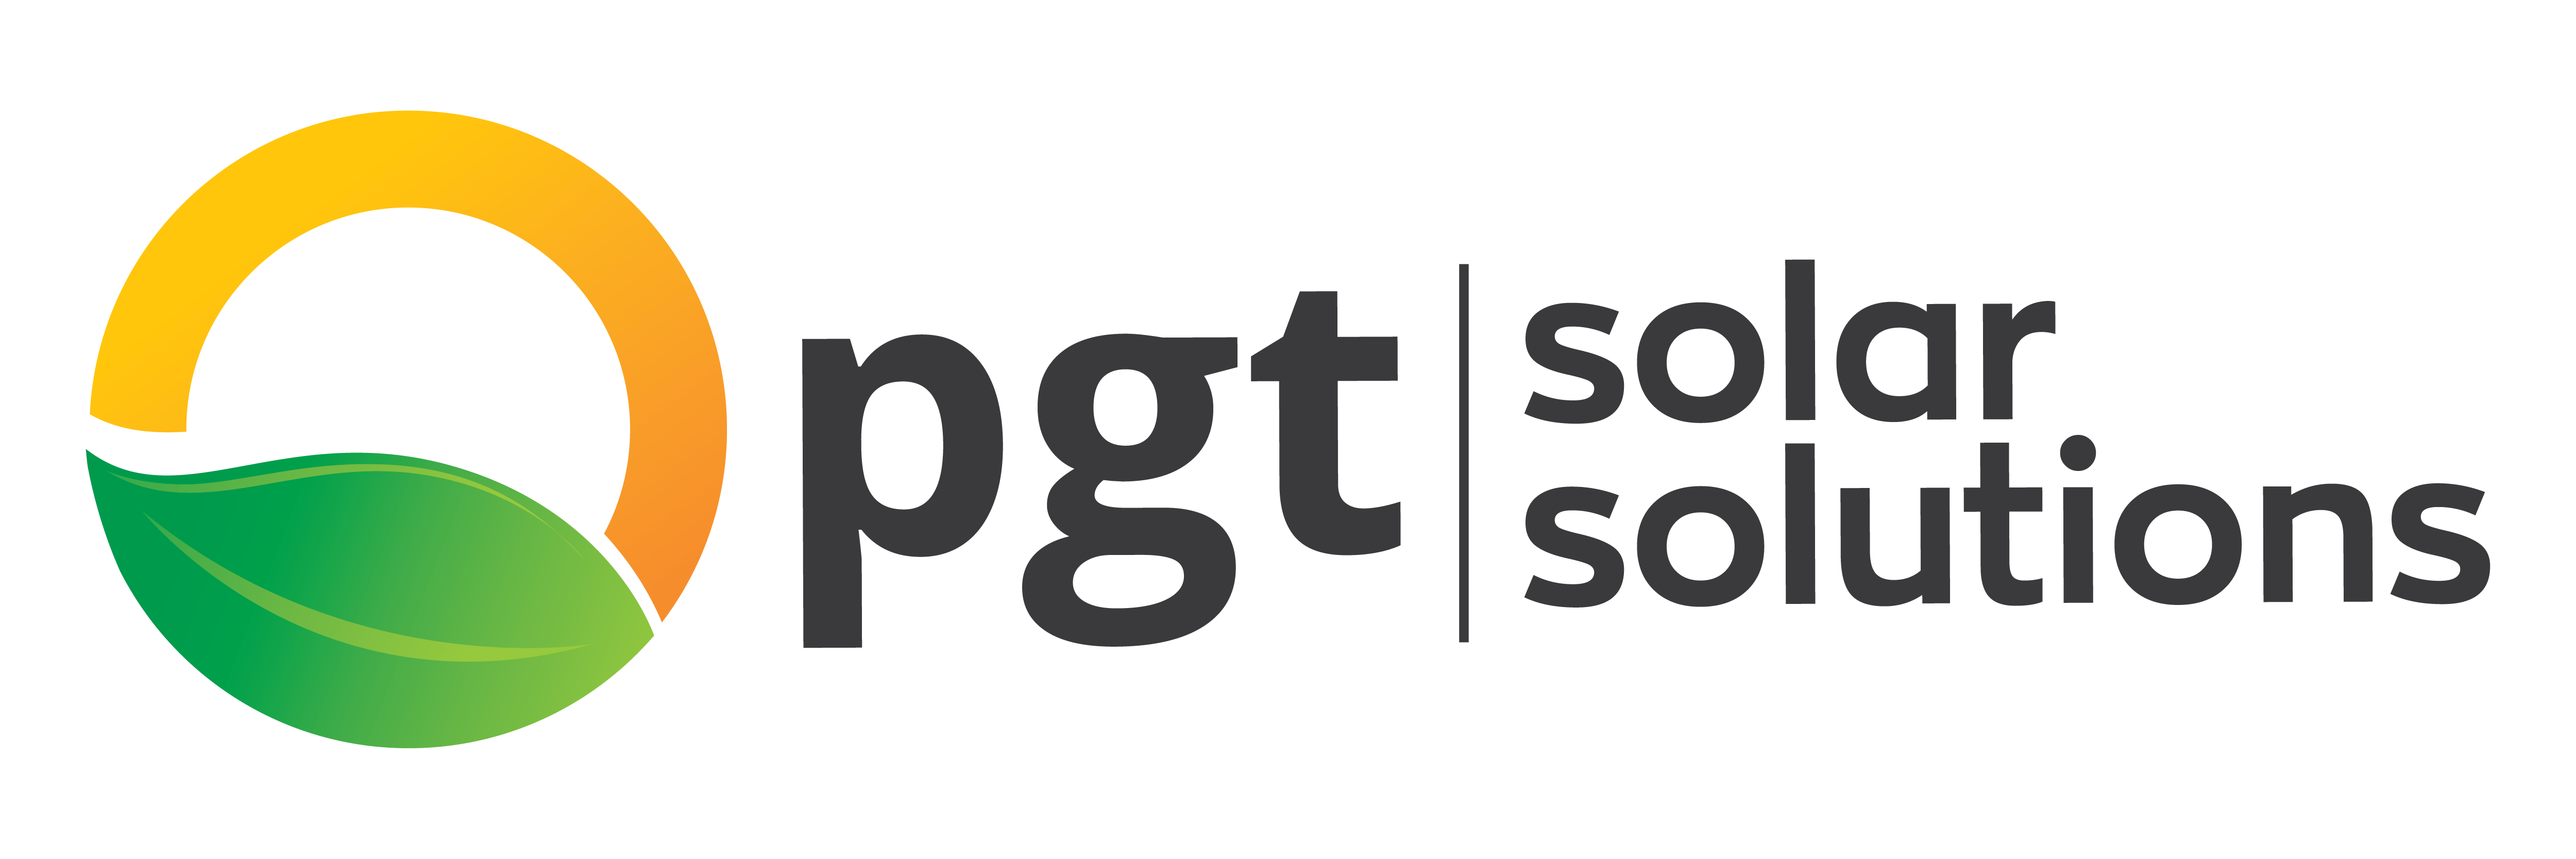 PGT-Solar-Solutions_vert